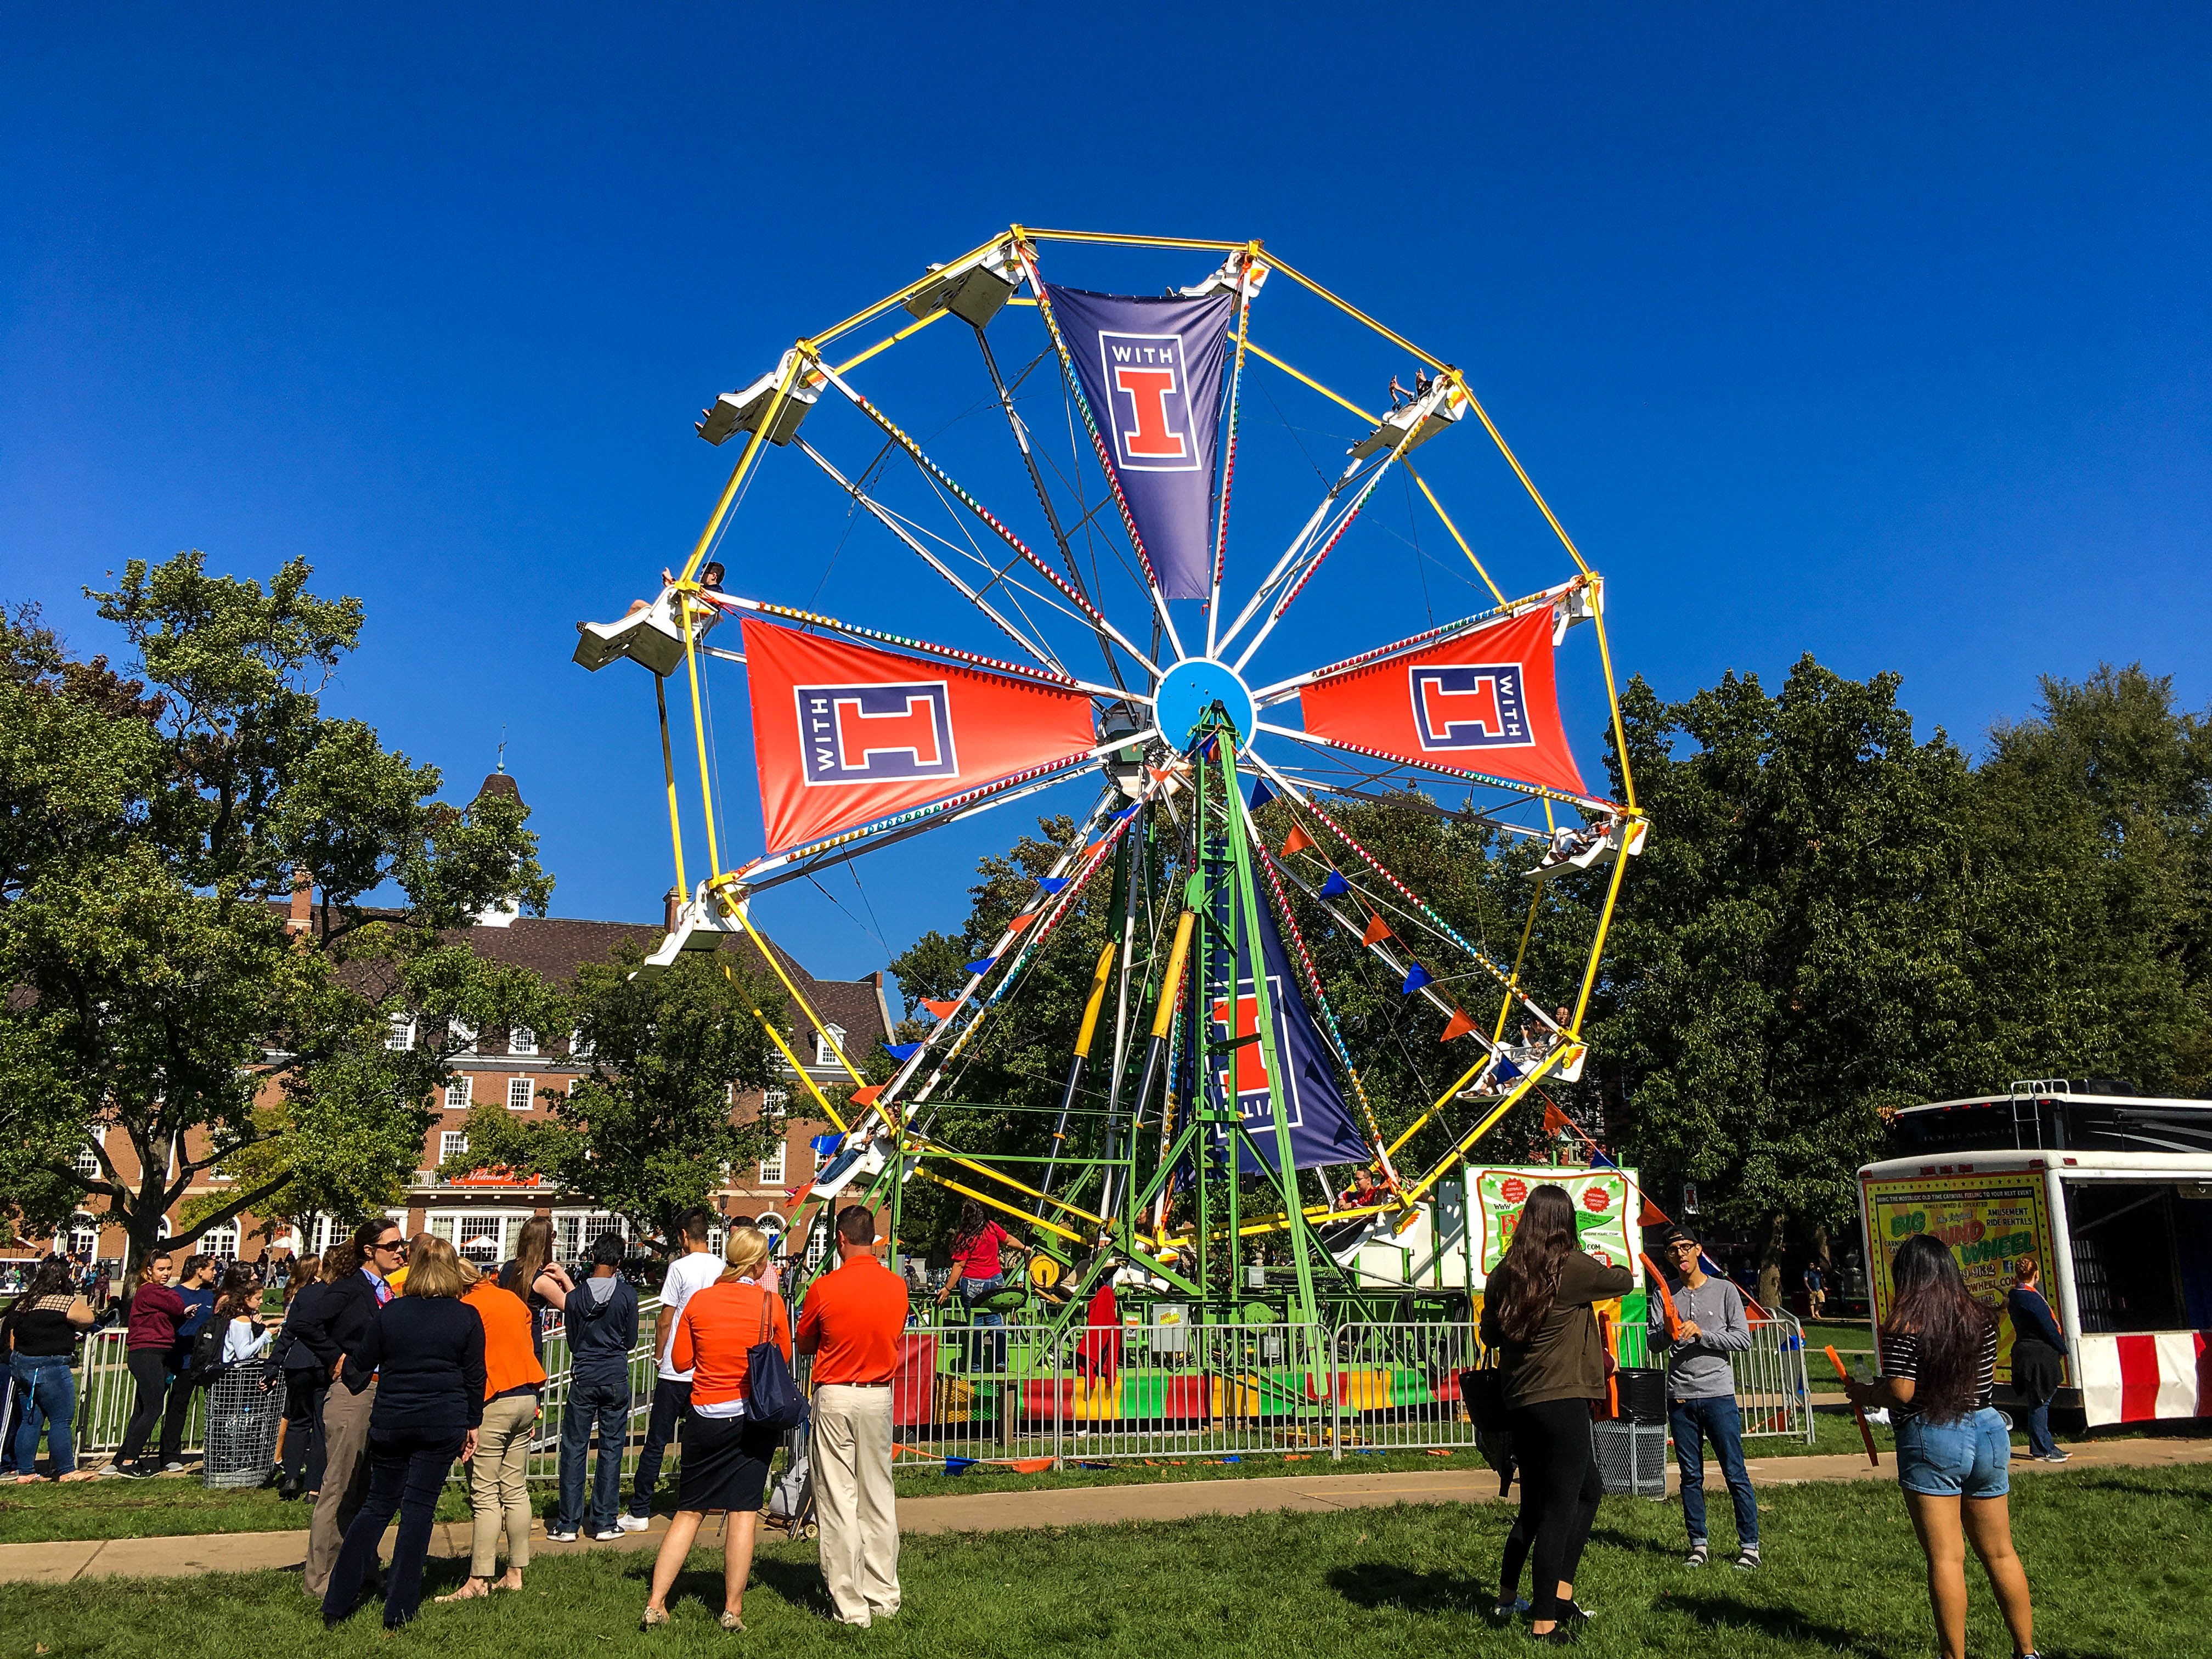 The â€œWith Illinoisâ€ campaign kicked off with a party on the quad that included a Ferris wheel and booths featuring RSOs and university departments.